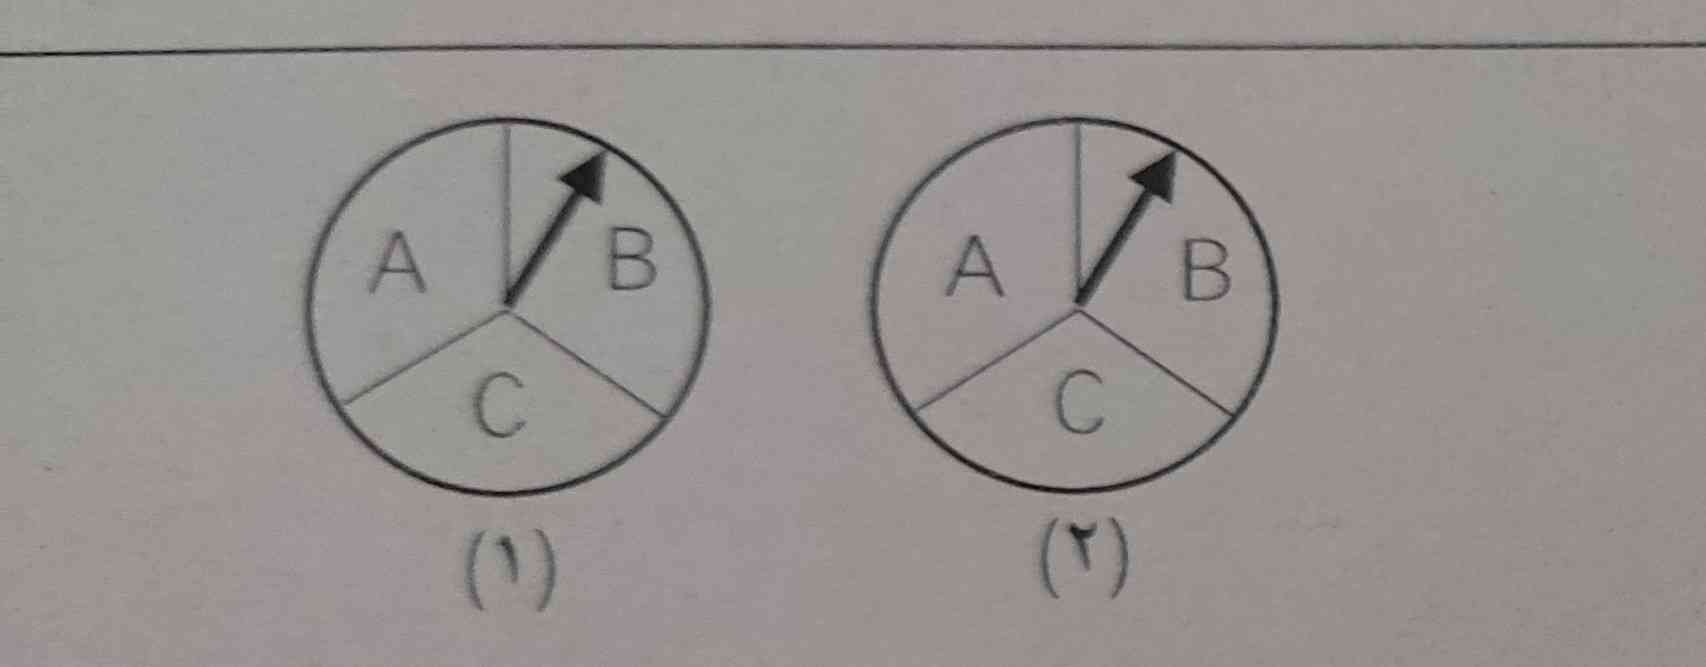 باتوجه به عقربه ها جواب بدهید. 
دو عقربه چرخنده را به طور همزمان میچرخانیم. 
الف) مجموعه S چند عضو دارد؟ 
ب)احتمال اینکه عقربه چرخنده (۱) روی ناحیه A ((و)) عقربه چرخنده (۲) روی ناحیه B قرار گیرد چقدر است؟ 
ب)احتمال اینکه عقربه چرخنده (۱) روی ناحیه B ((یا)) عقربه چرخنده (۲) روی ناحیه C قرار گیرد چقدر است؟ 